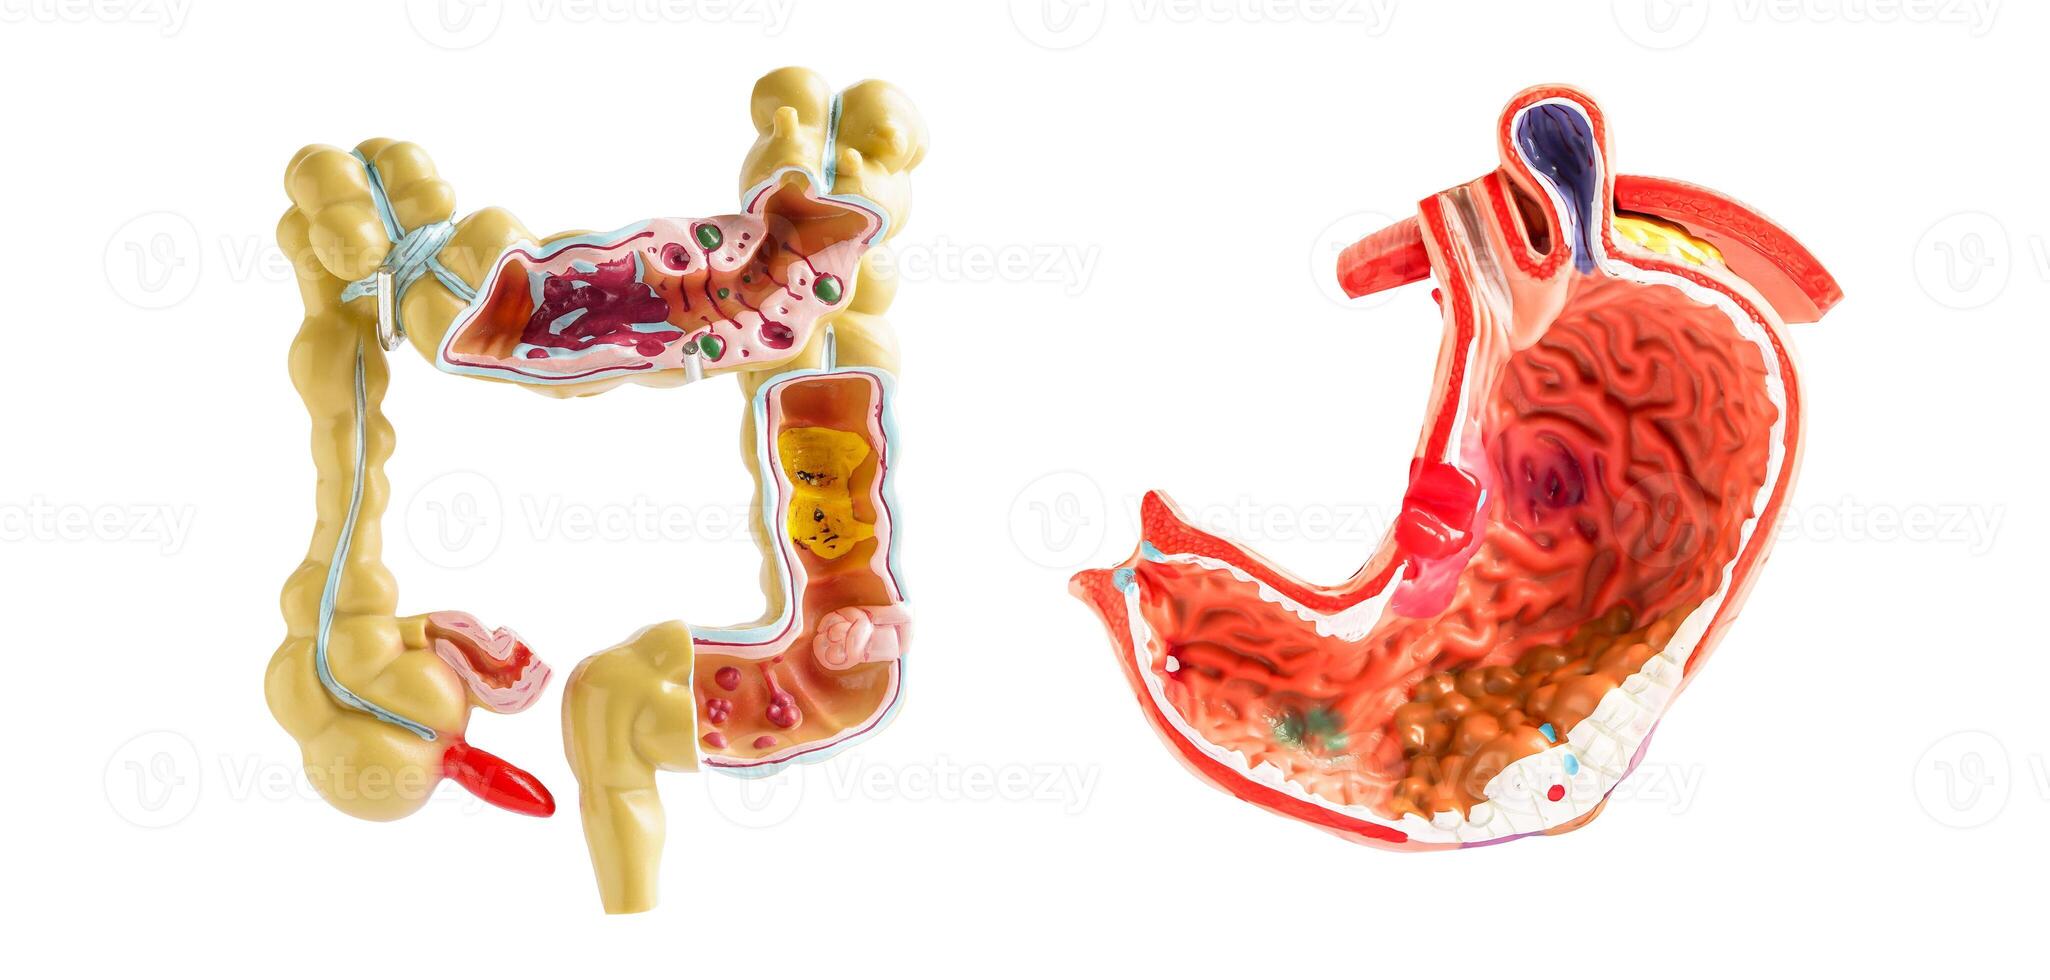 intestino y estómago modelo aislado en blanco fondo, médico participación anatomía modelo para estudiar diagnóstico y tratamiento en hospital. foto